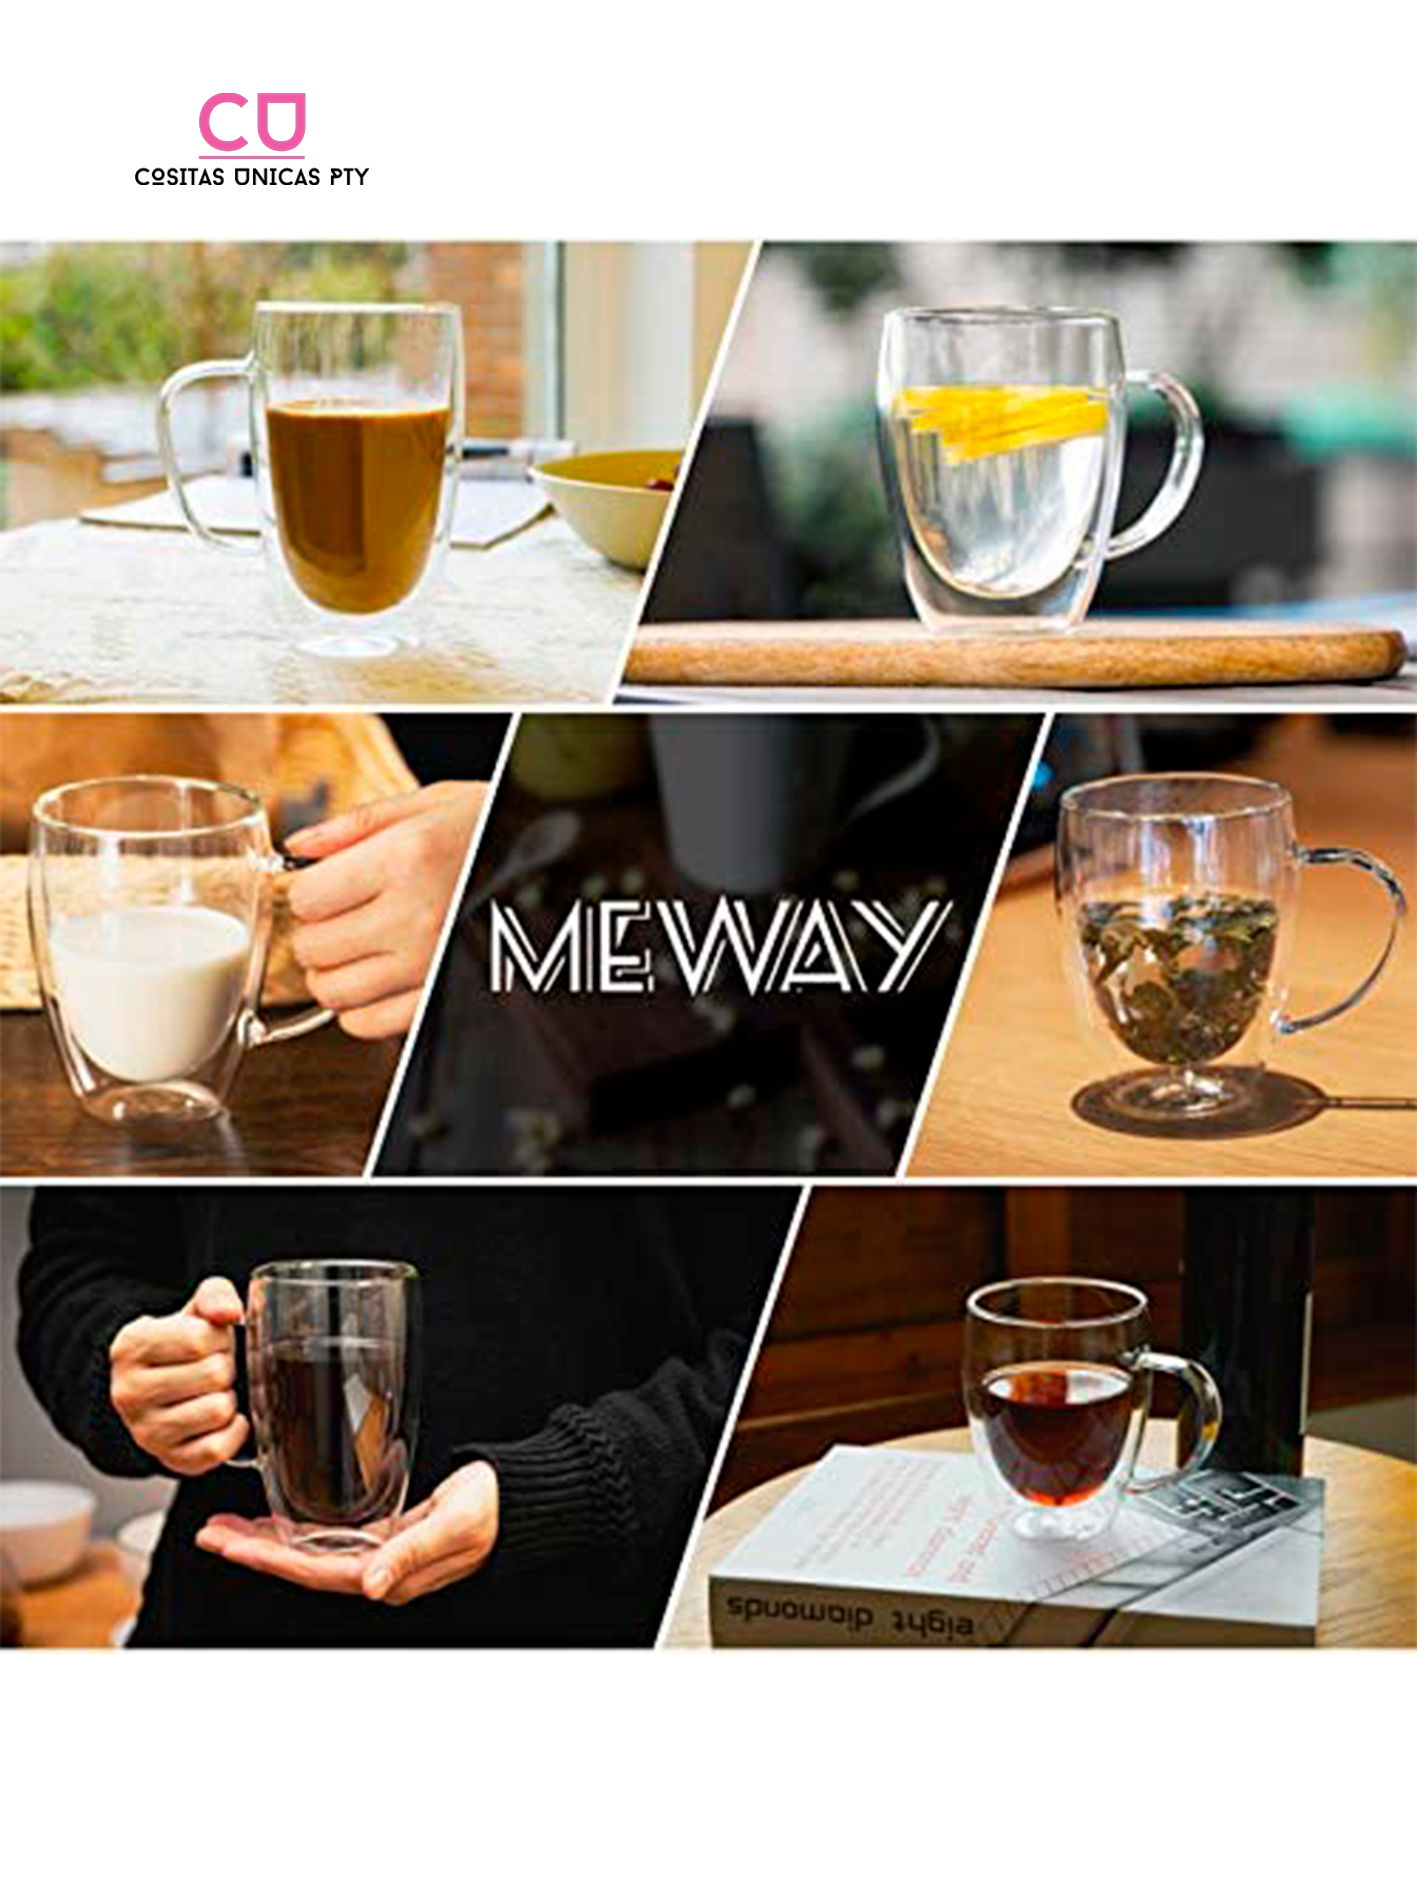 Tazas de café de cristal, taza de calabaza de 16 onzas con asa, juego de 2,  taza de té de café trans…Ver más Tazas de café de cristal, taza de